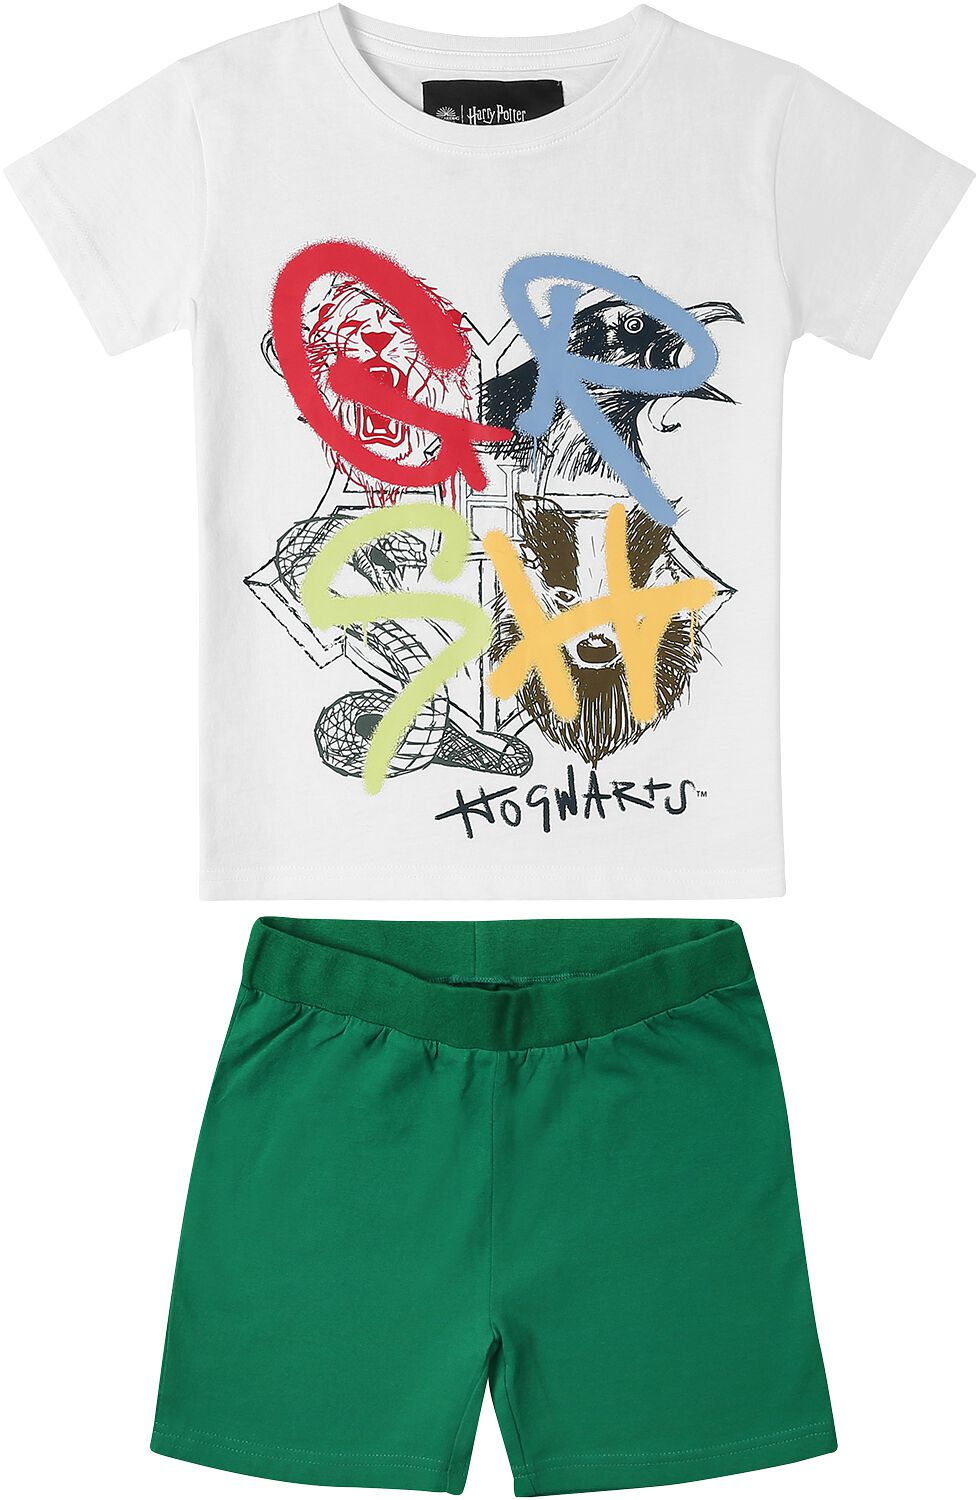 Harry Potter T-Shirt für Kleinkinder - Häuser - für Mädchen & Jungen - weiß/grün  - EMP exklusives Merchandise!